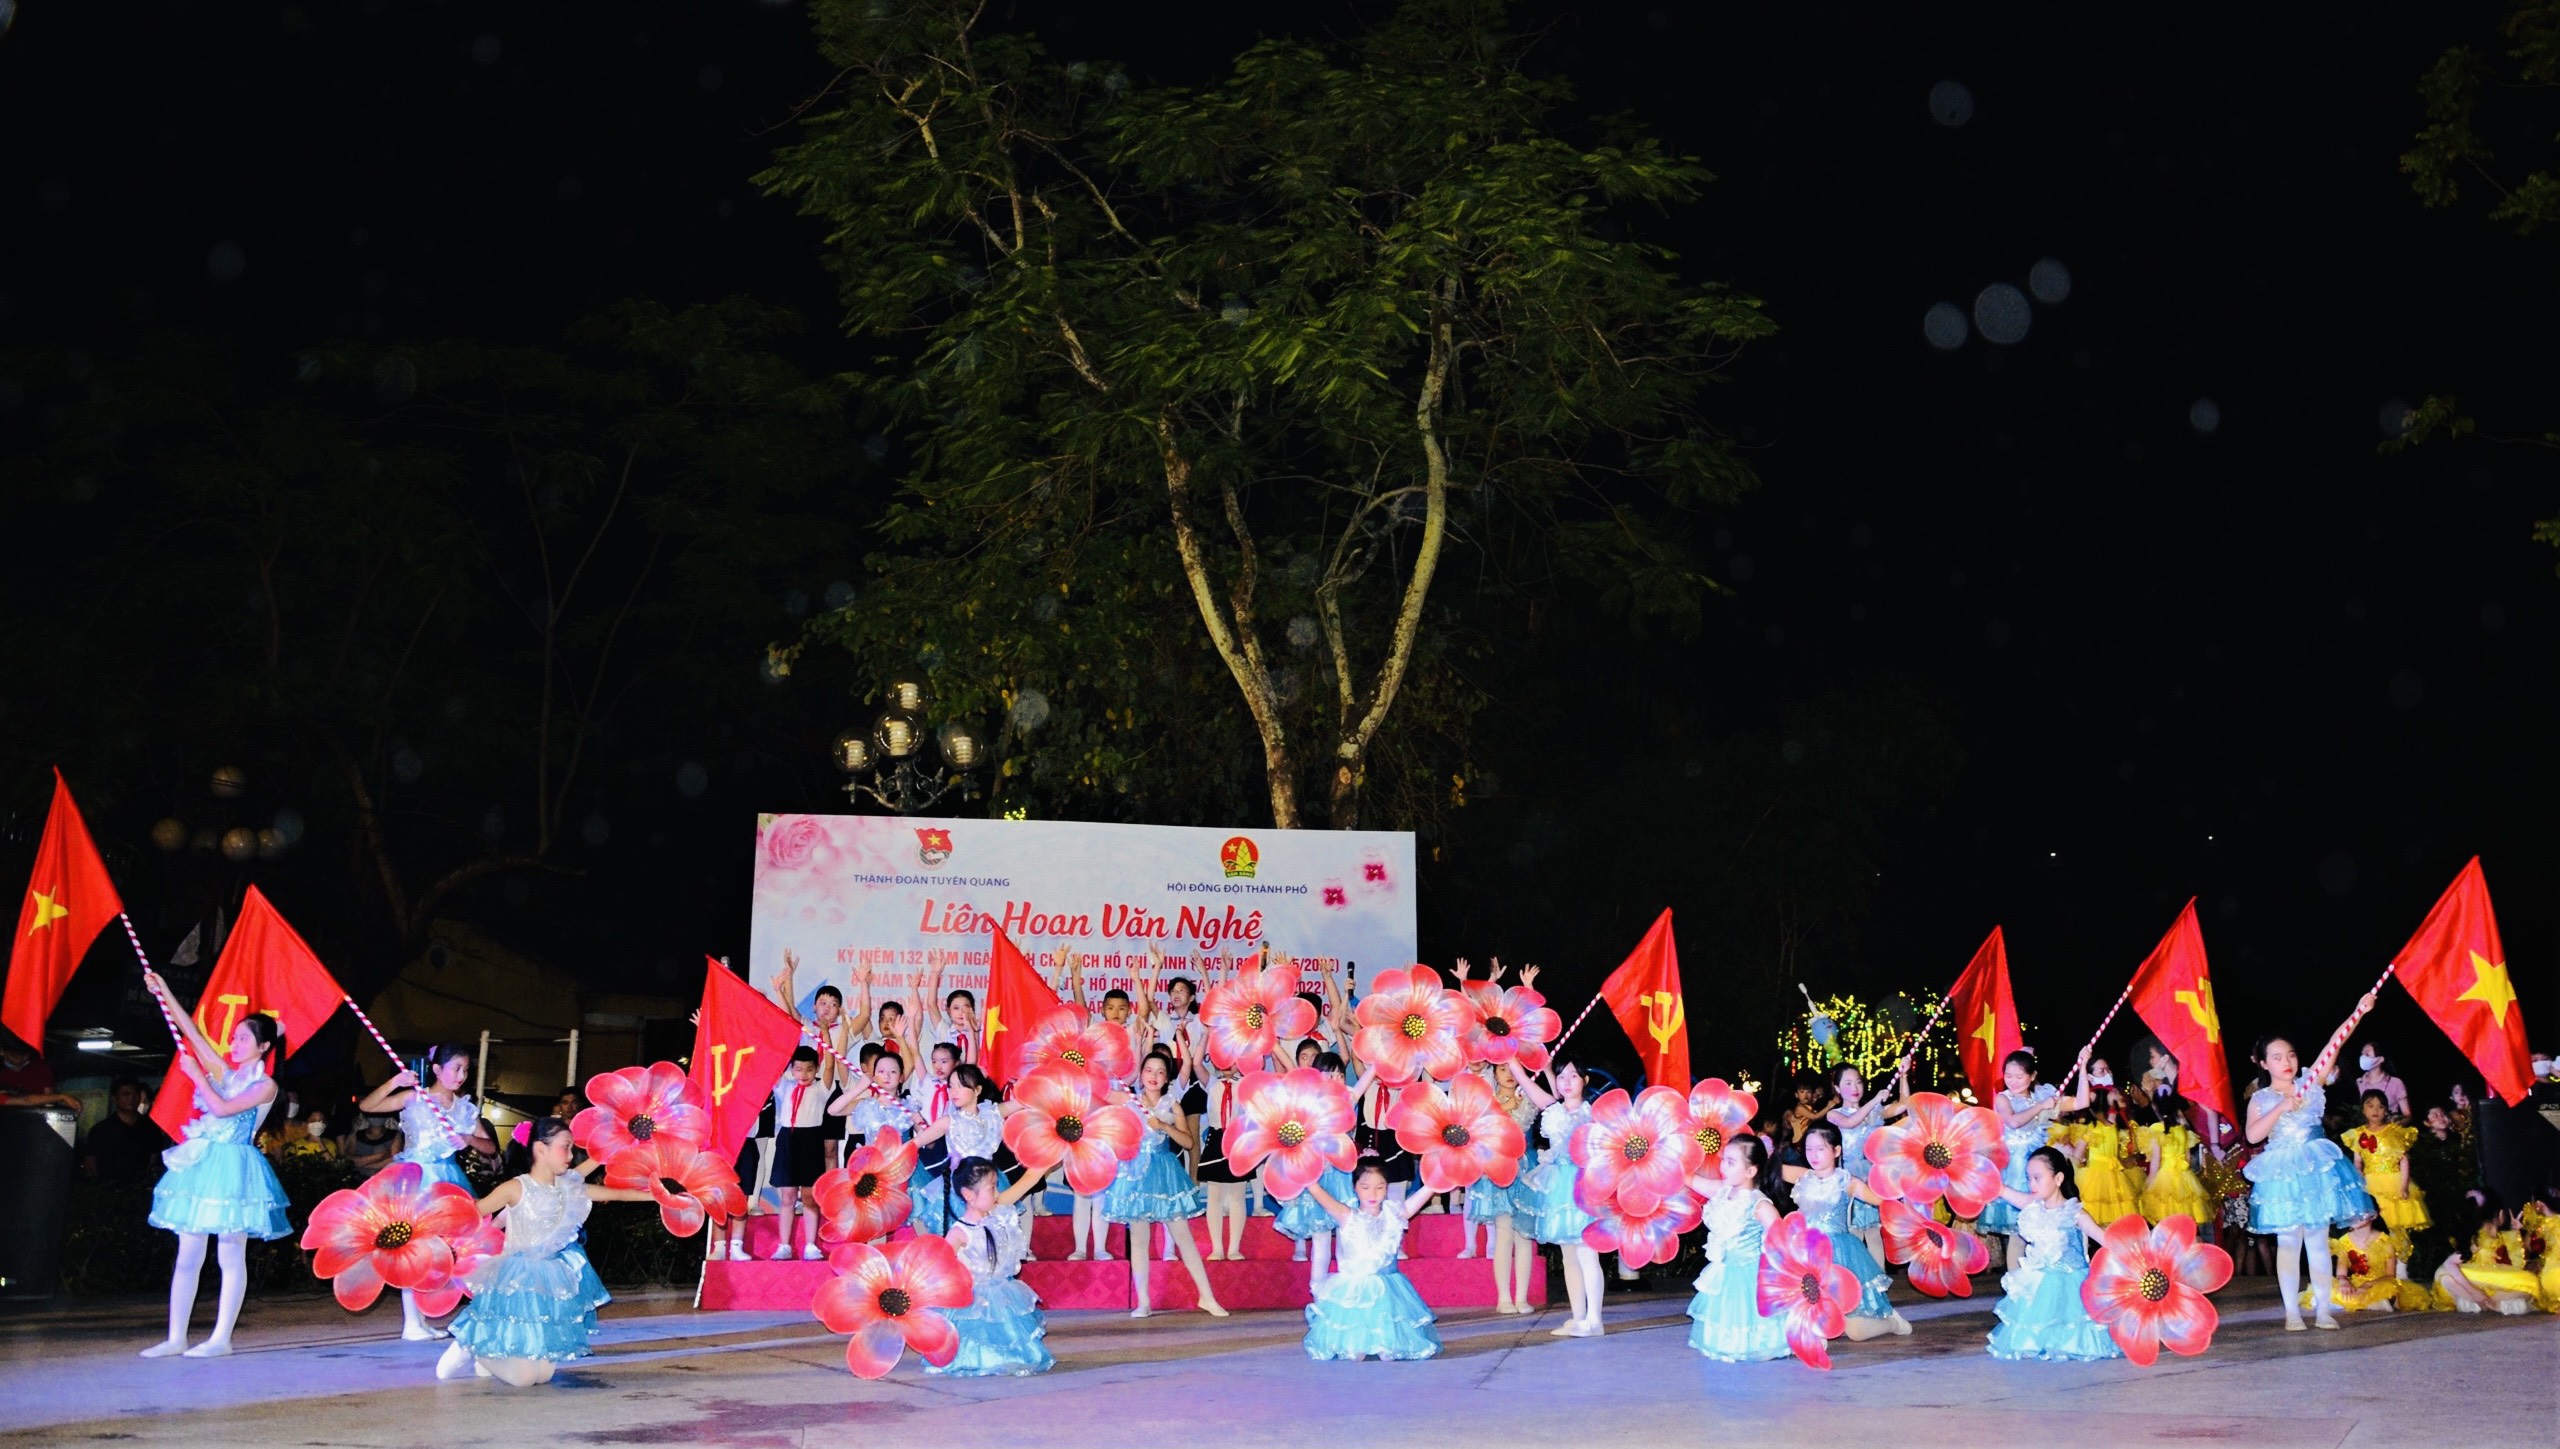 Thành đoàn Tuyên Quang tổ chức Liên hoan văn nghệ chào mừng kỷ niệm 132 năm ngày sinh Chủ tịch Hồ Chí Minh và 81 năm ngày thành lập đội TNTP Hồ Chí Minh